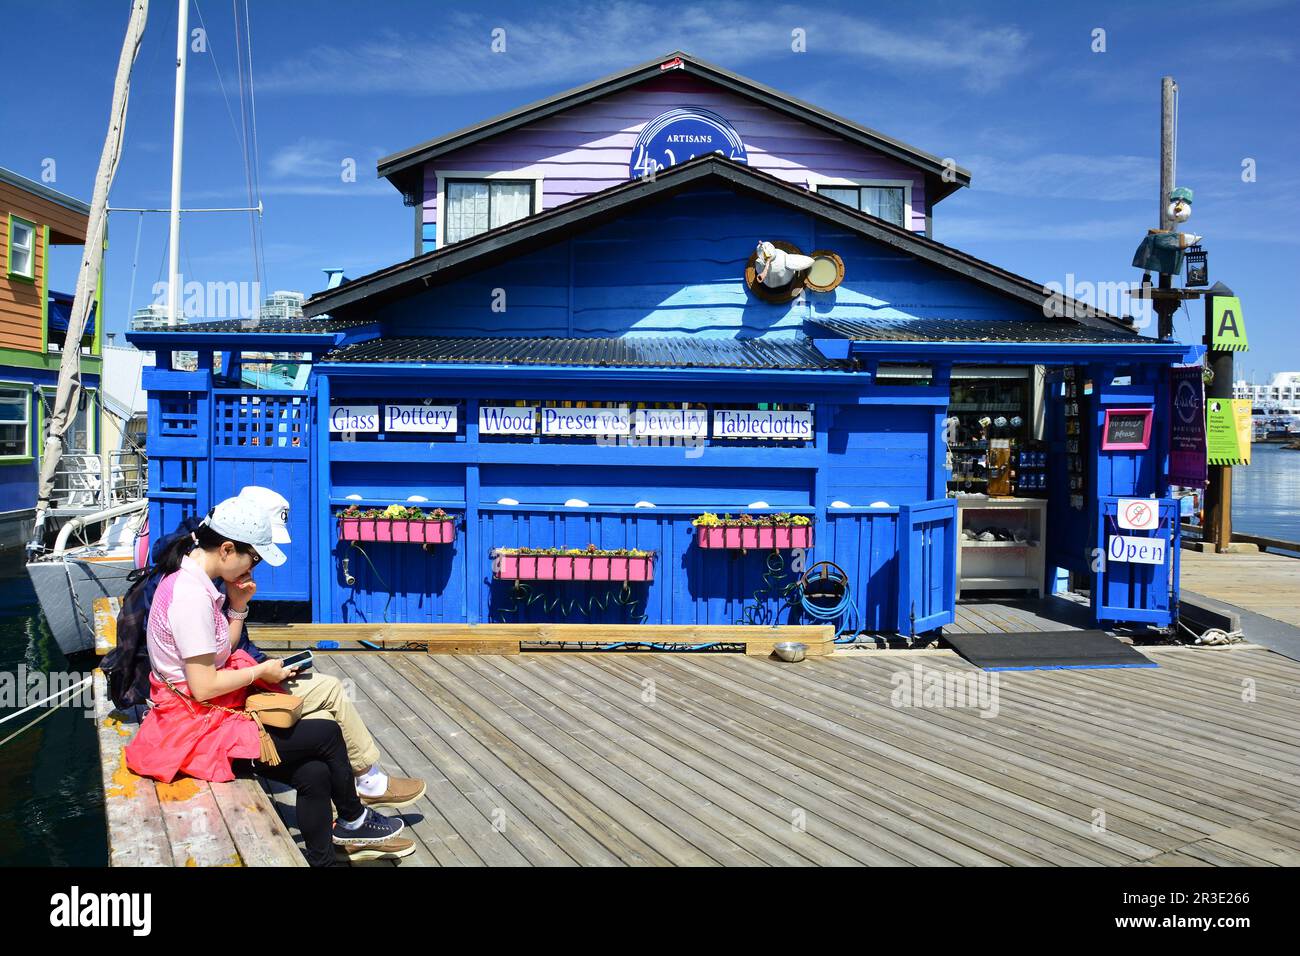 Die Sehenswürdigkeiten und Geschäfte von Fisherman's Wharf in Victoria BC, Kanada. Kommen Sie nach Victoria und erkunden Sie den Wharf. Stockfoto